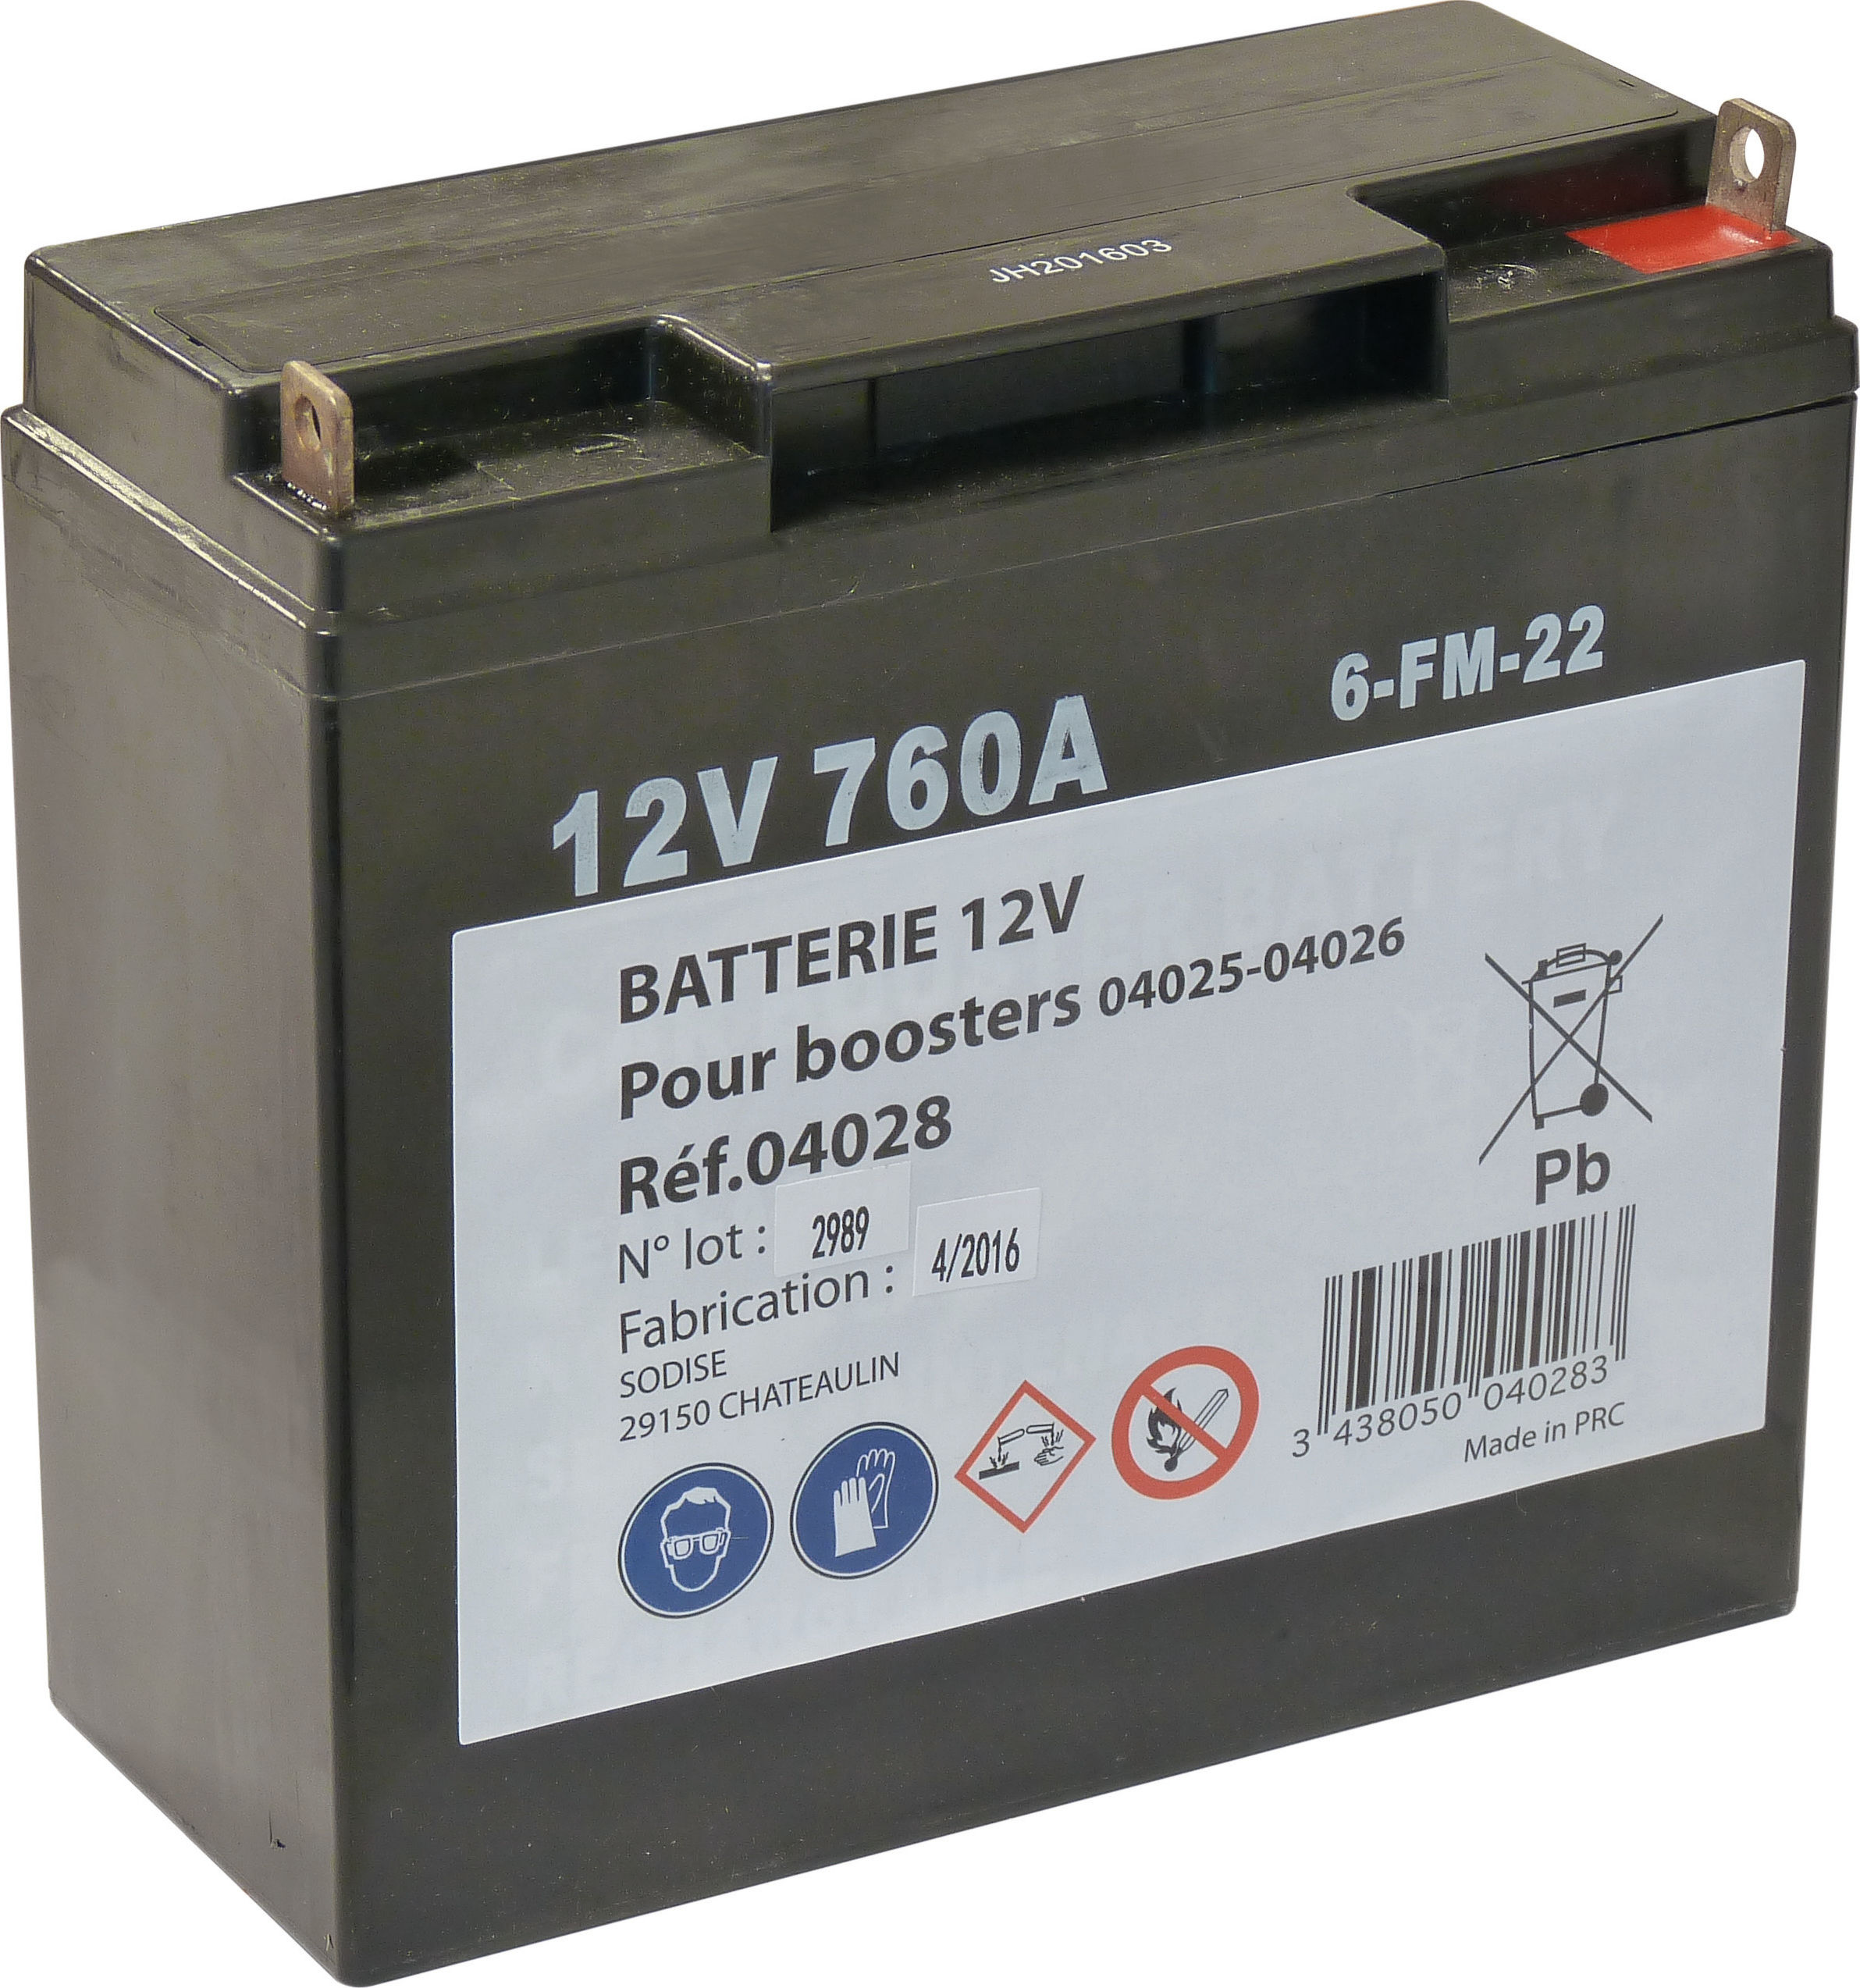 Batterie p/ booster 04025-04026 Chargeurs & câbles de batterie -  AGZ000445920